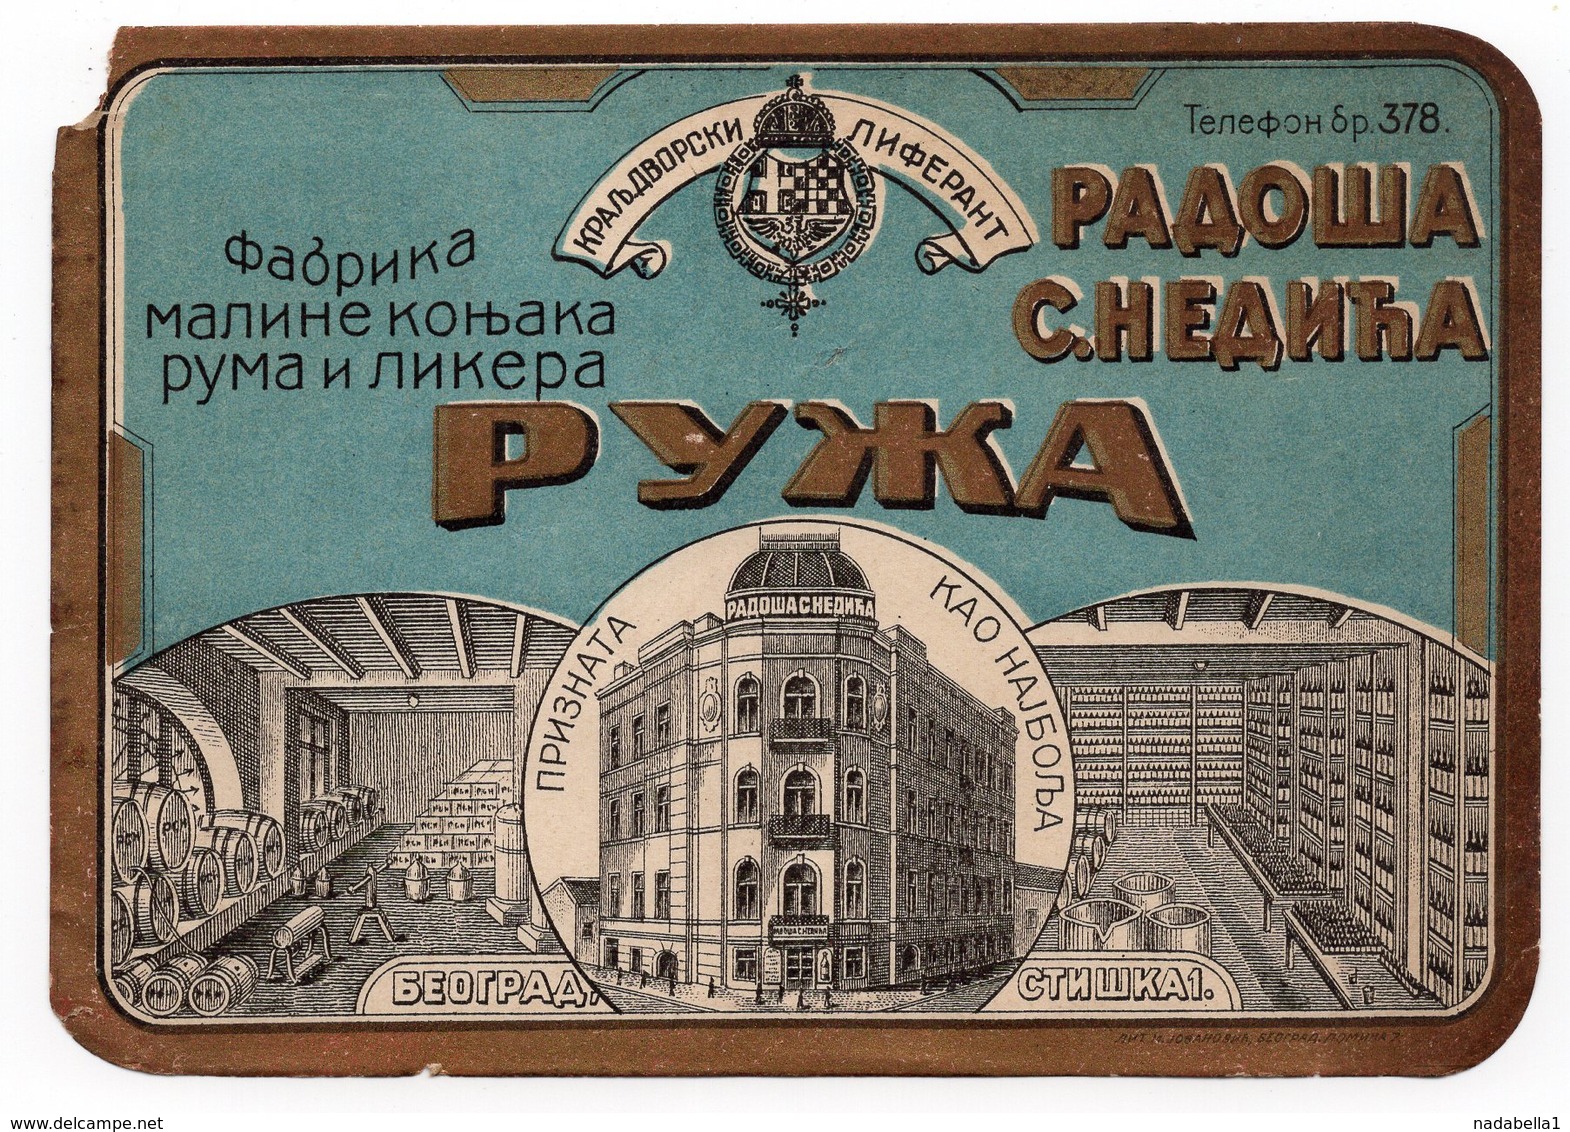 1930s KINGDOM OF YUGOSLAVIA, SERBIA, BEOGRAD, LABEL FOR ALCOHOLIC DRINK, COGNAC, LIQUER, RUM - Publicidad